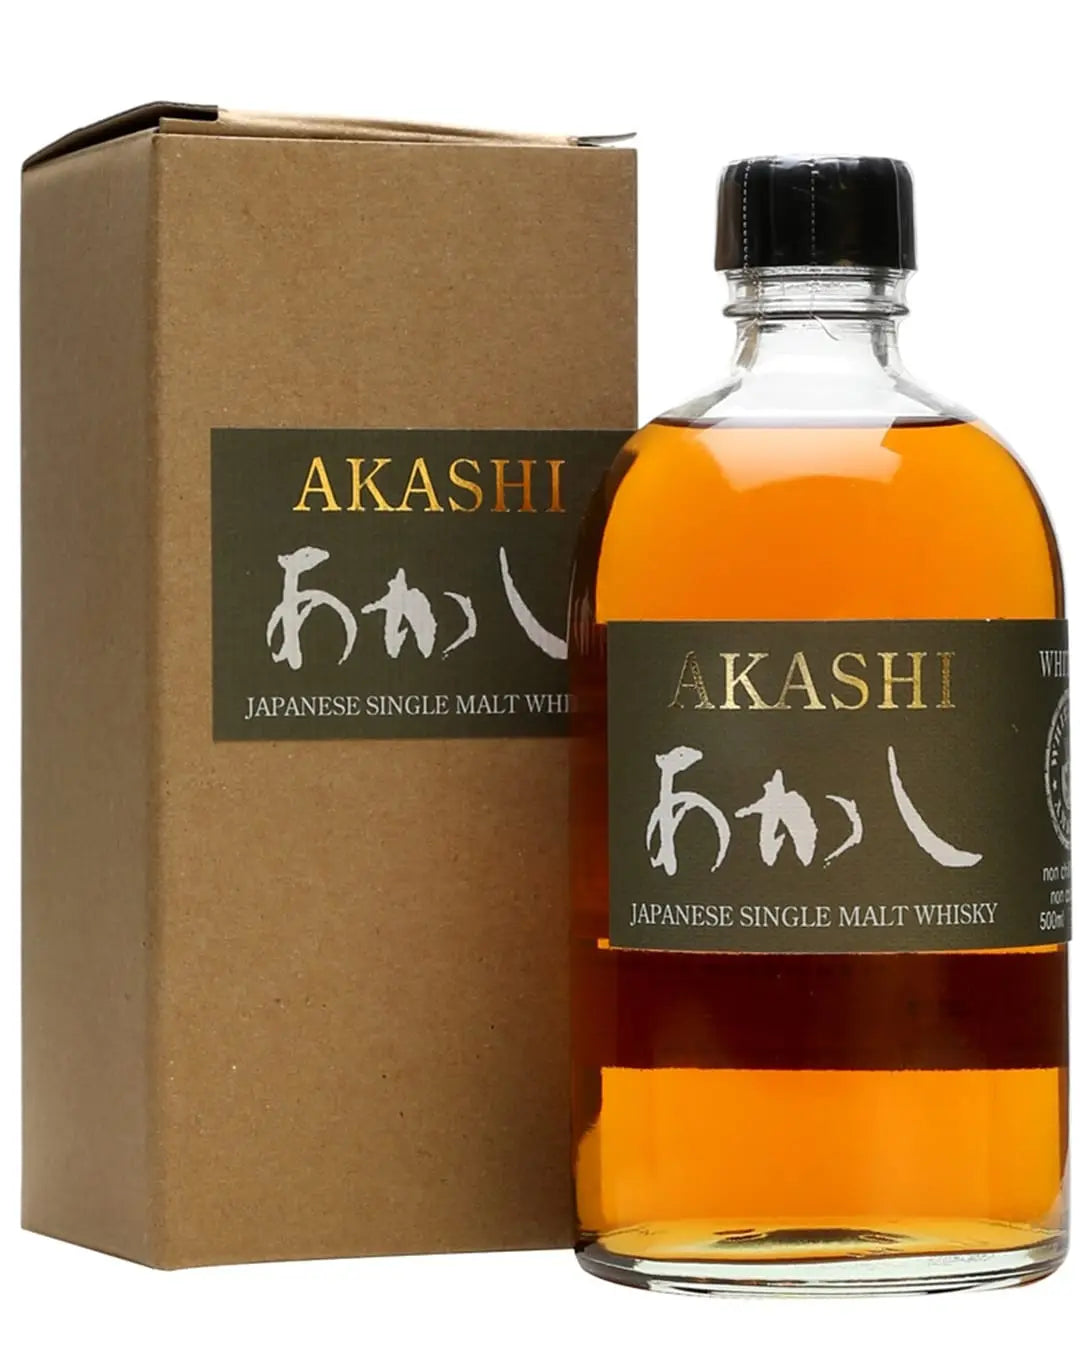 Akashi Blended Whisky 50cl